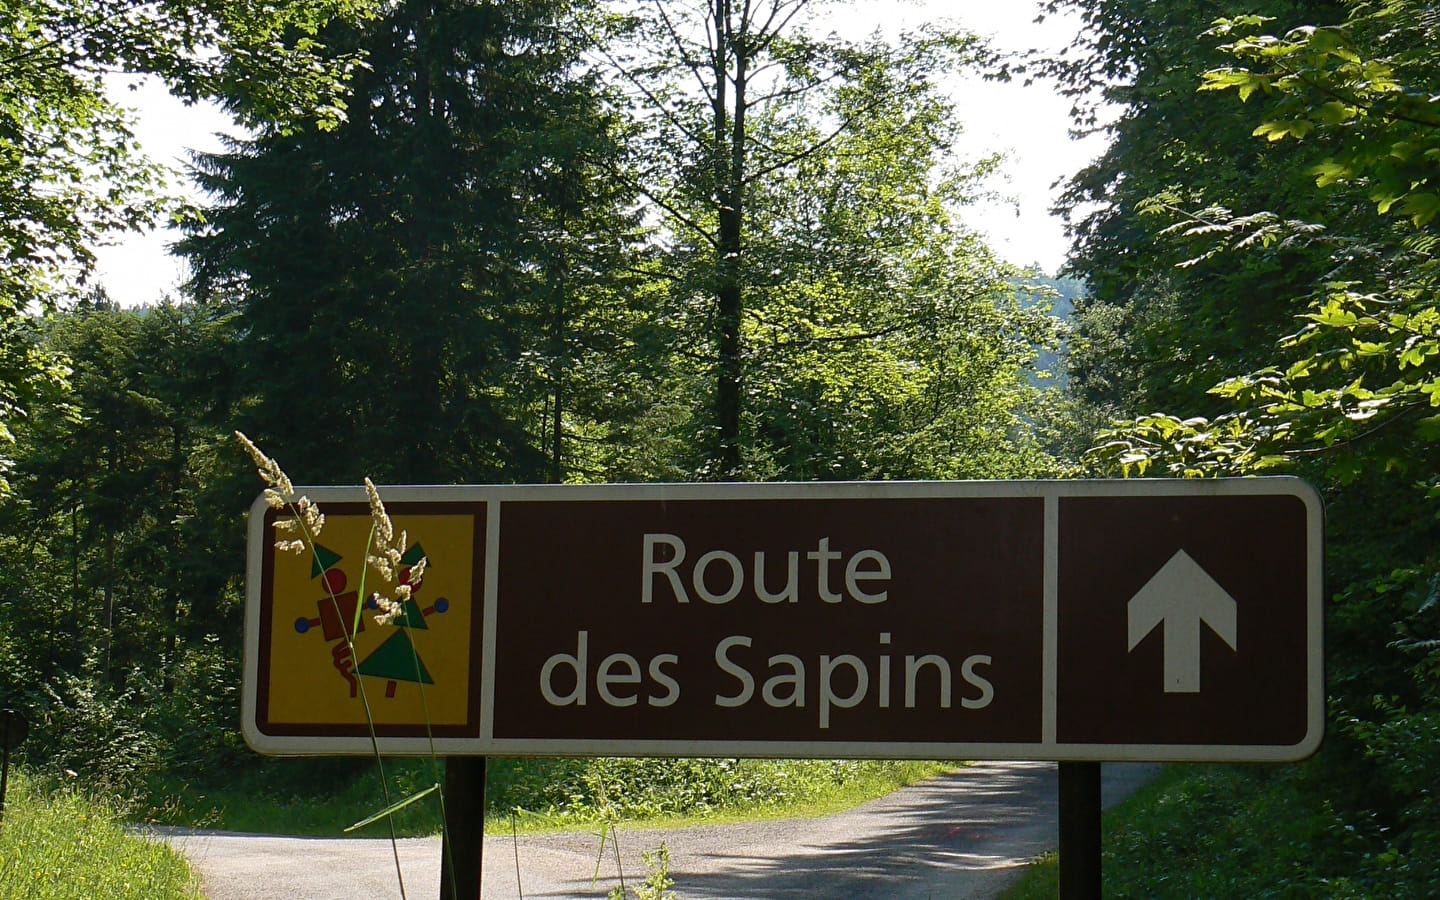 The route des sapins